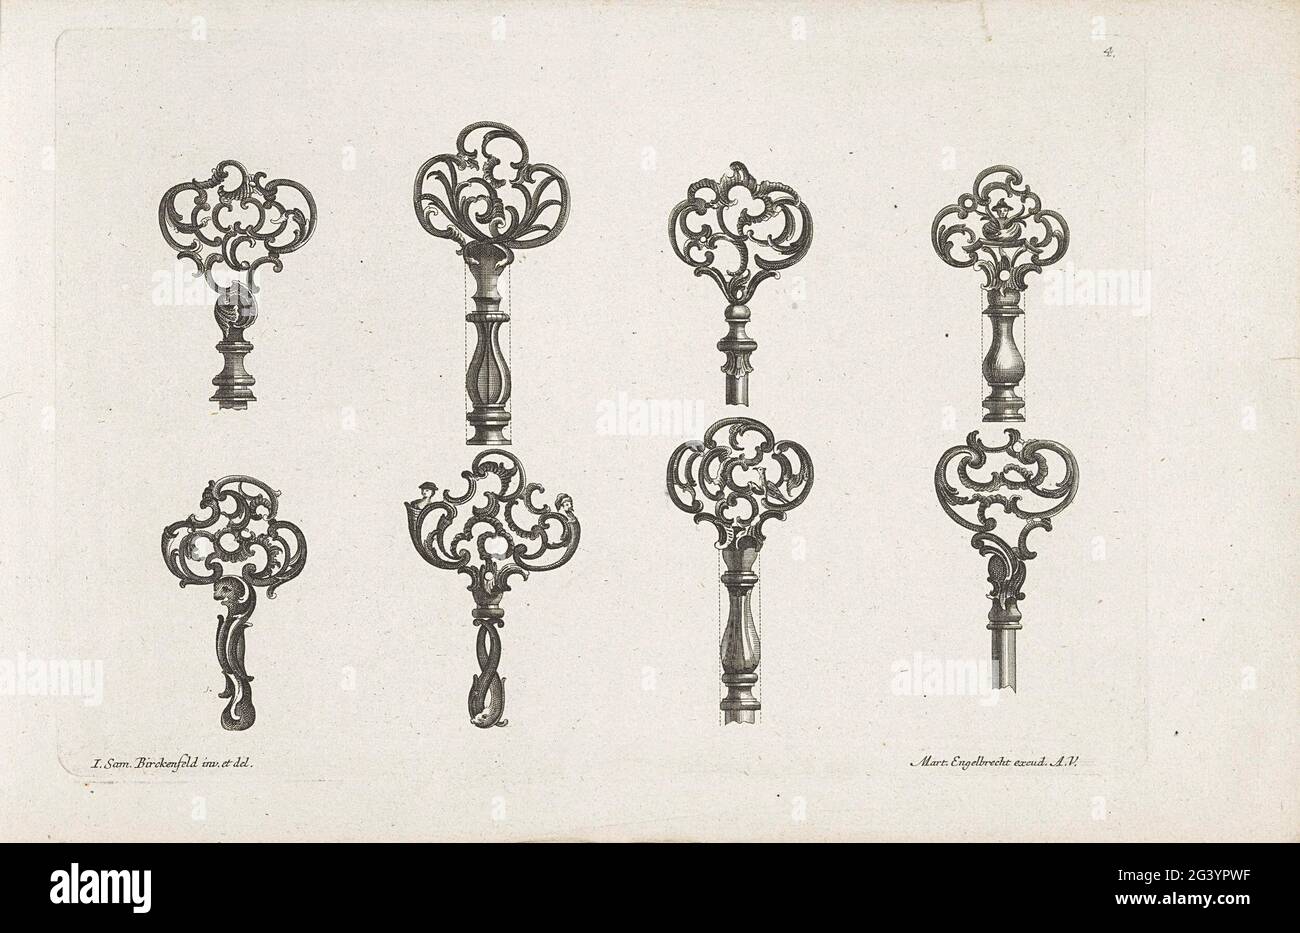 Acht Schlüsseldesigns mit Tiermotiven; Designs für Schlösser und Schlüssel.  Zwei Schlüssel sind mit Büsten verziert Stockfotografie - Alamy